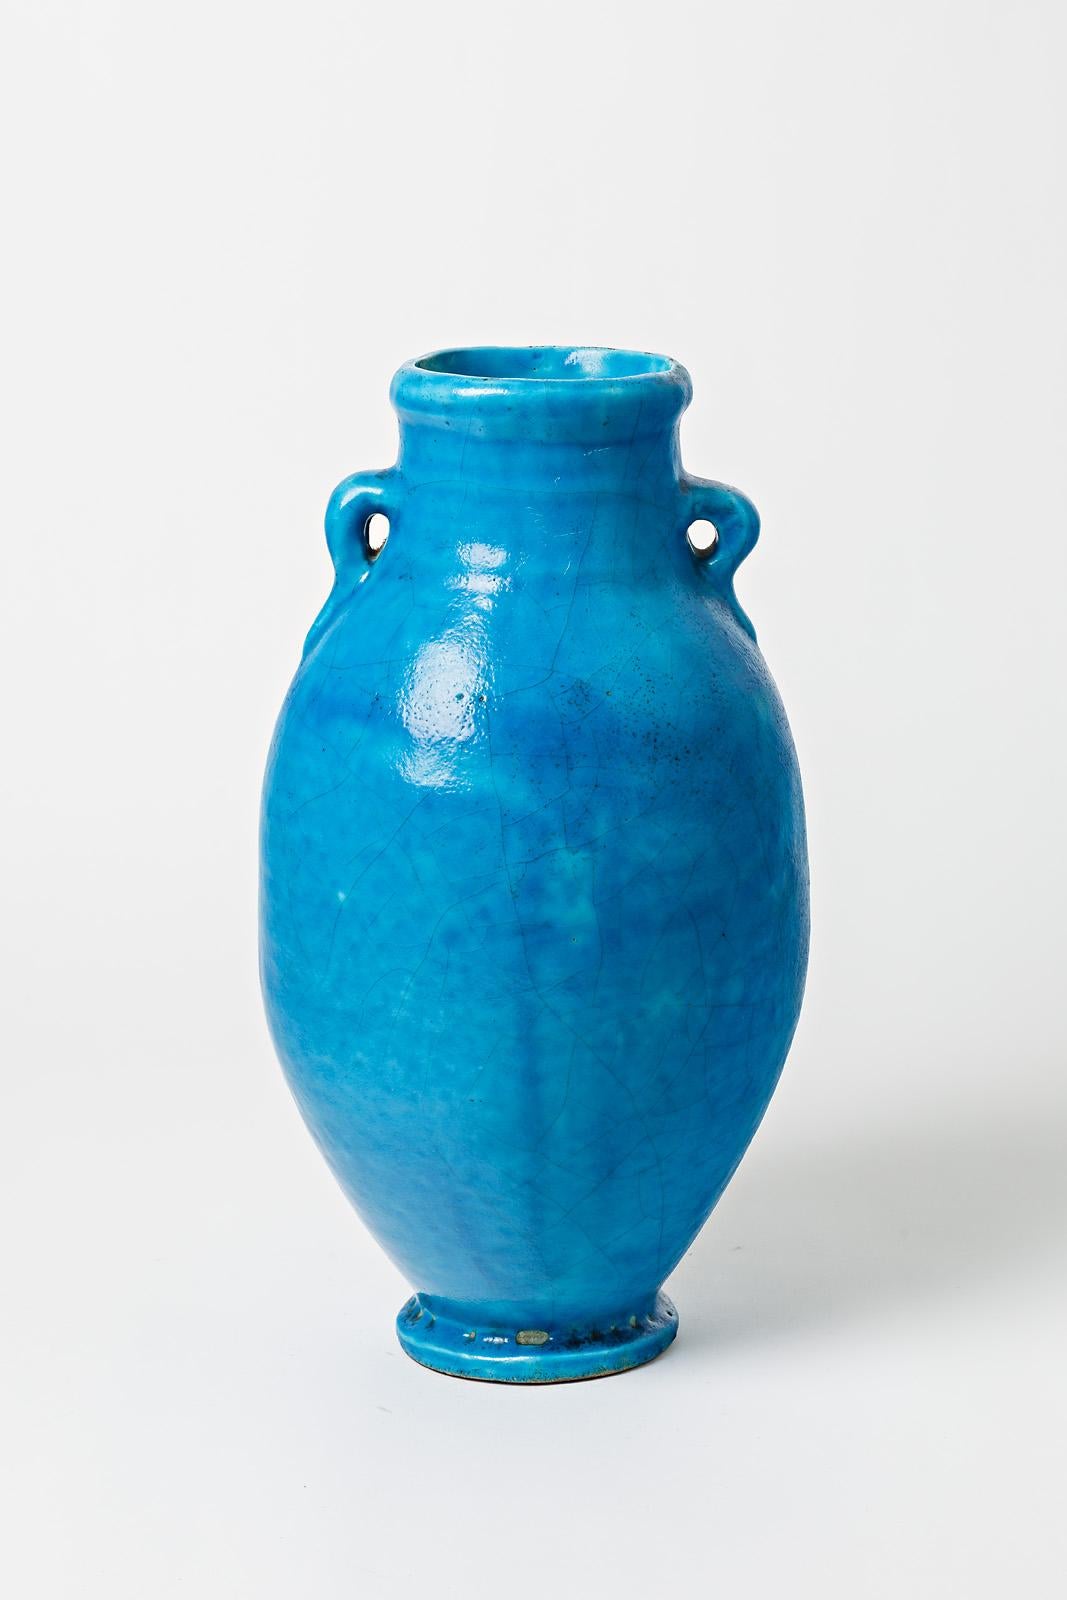 Vase aus blau glasierter Keramik, Raoul Lachenal zugeschrieben.
Nicht signiert. 
Um 1930.

H : 15,7' x 7,9' x 7,9' Zoll.